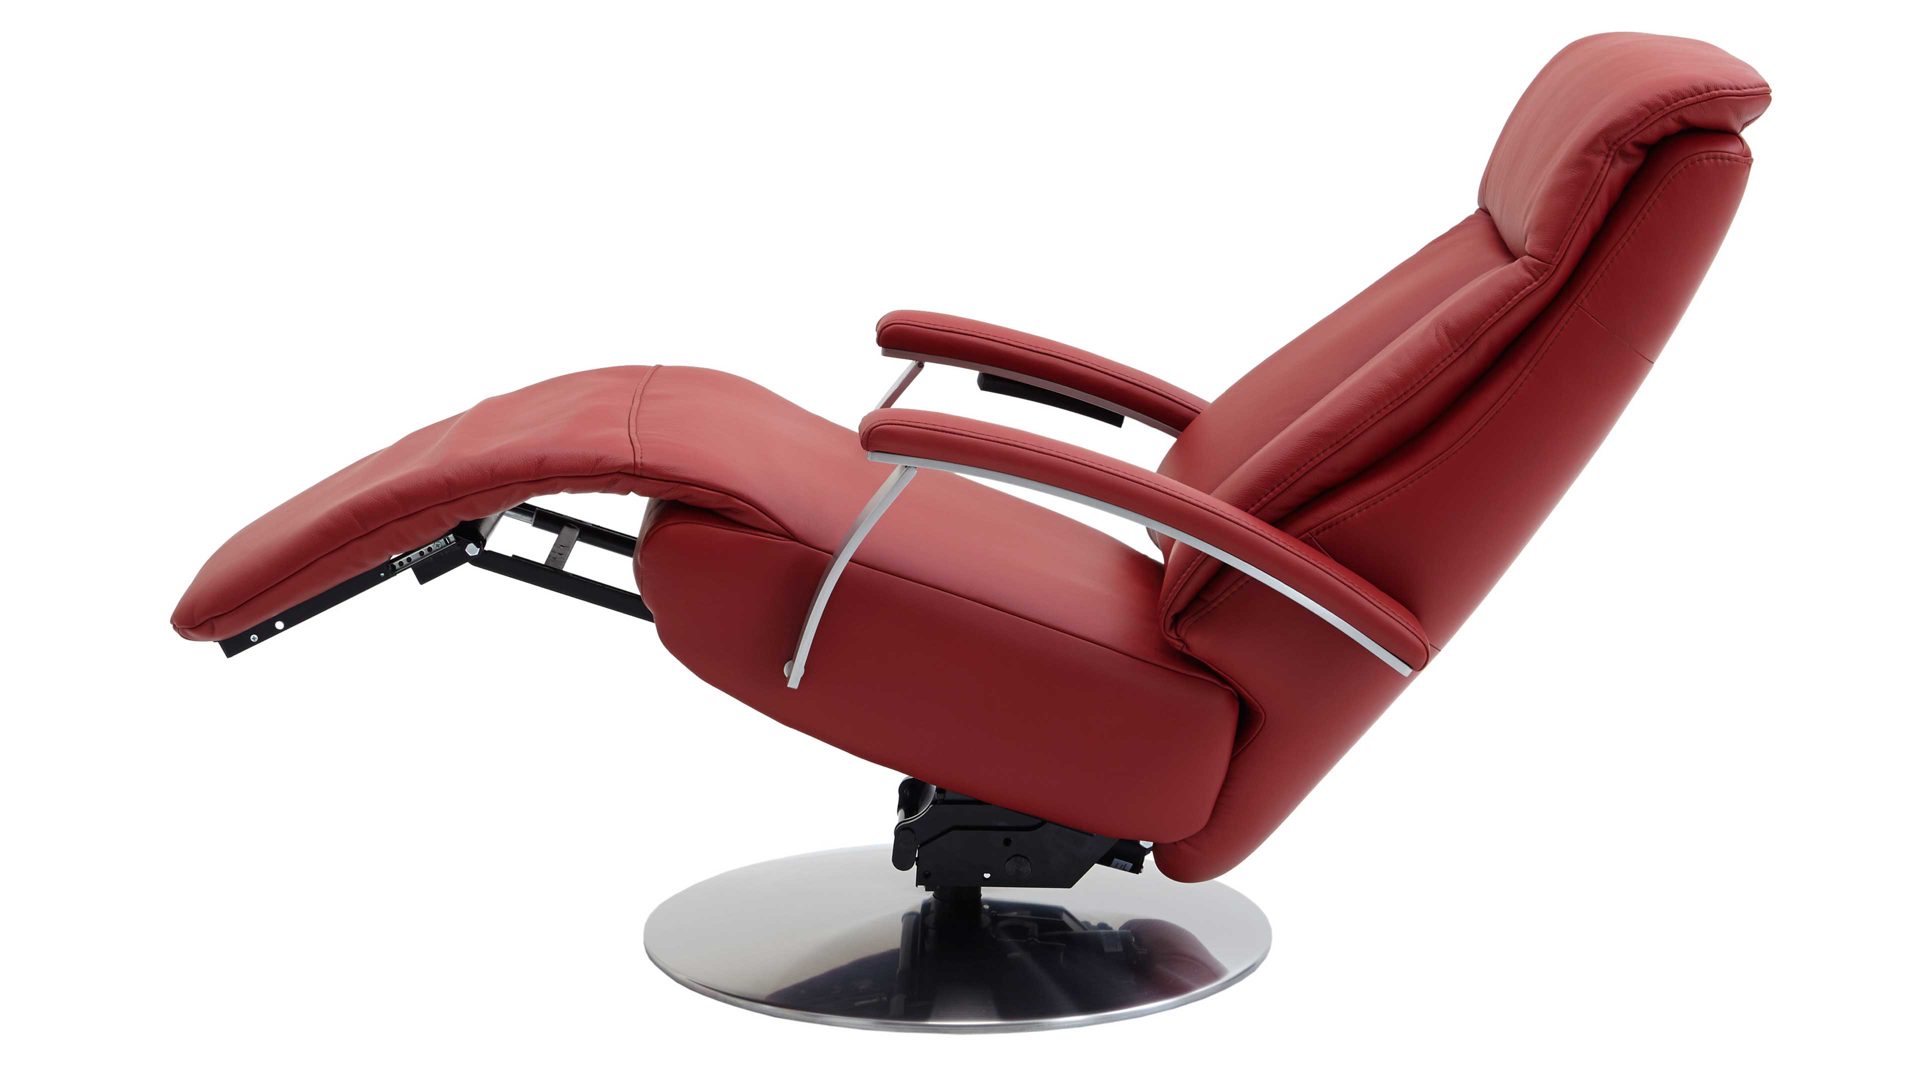  Keyohome Universal-Bezug für Relaxsessel mit verstellbarer  Rückenlehne, gesteppt, rutschfest, Antifouling, 1 Sitzer rot